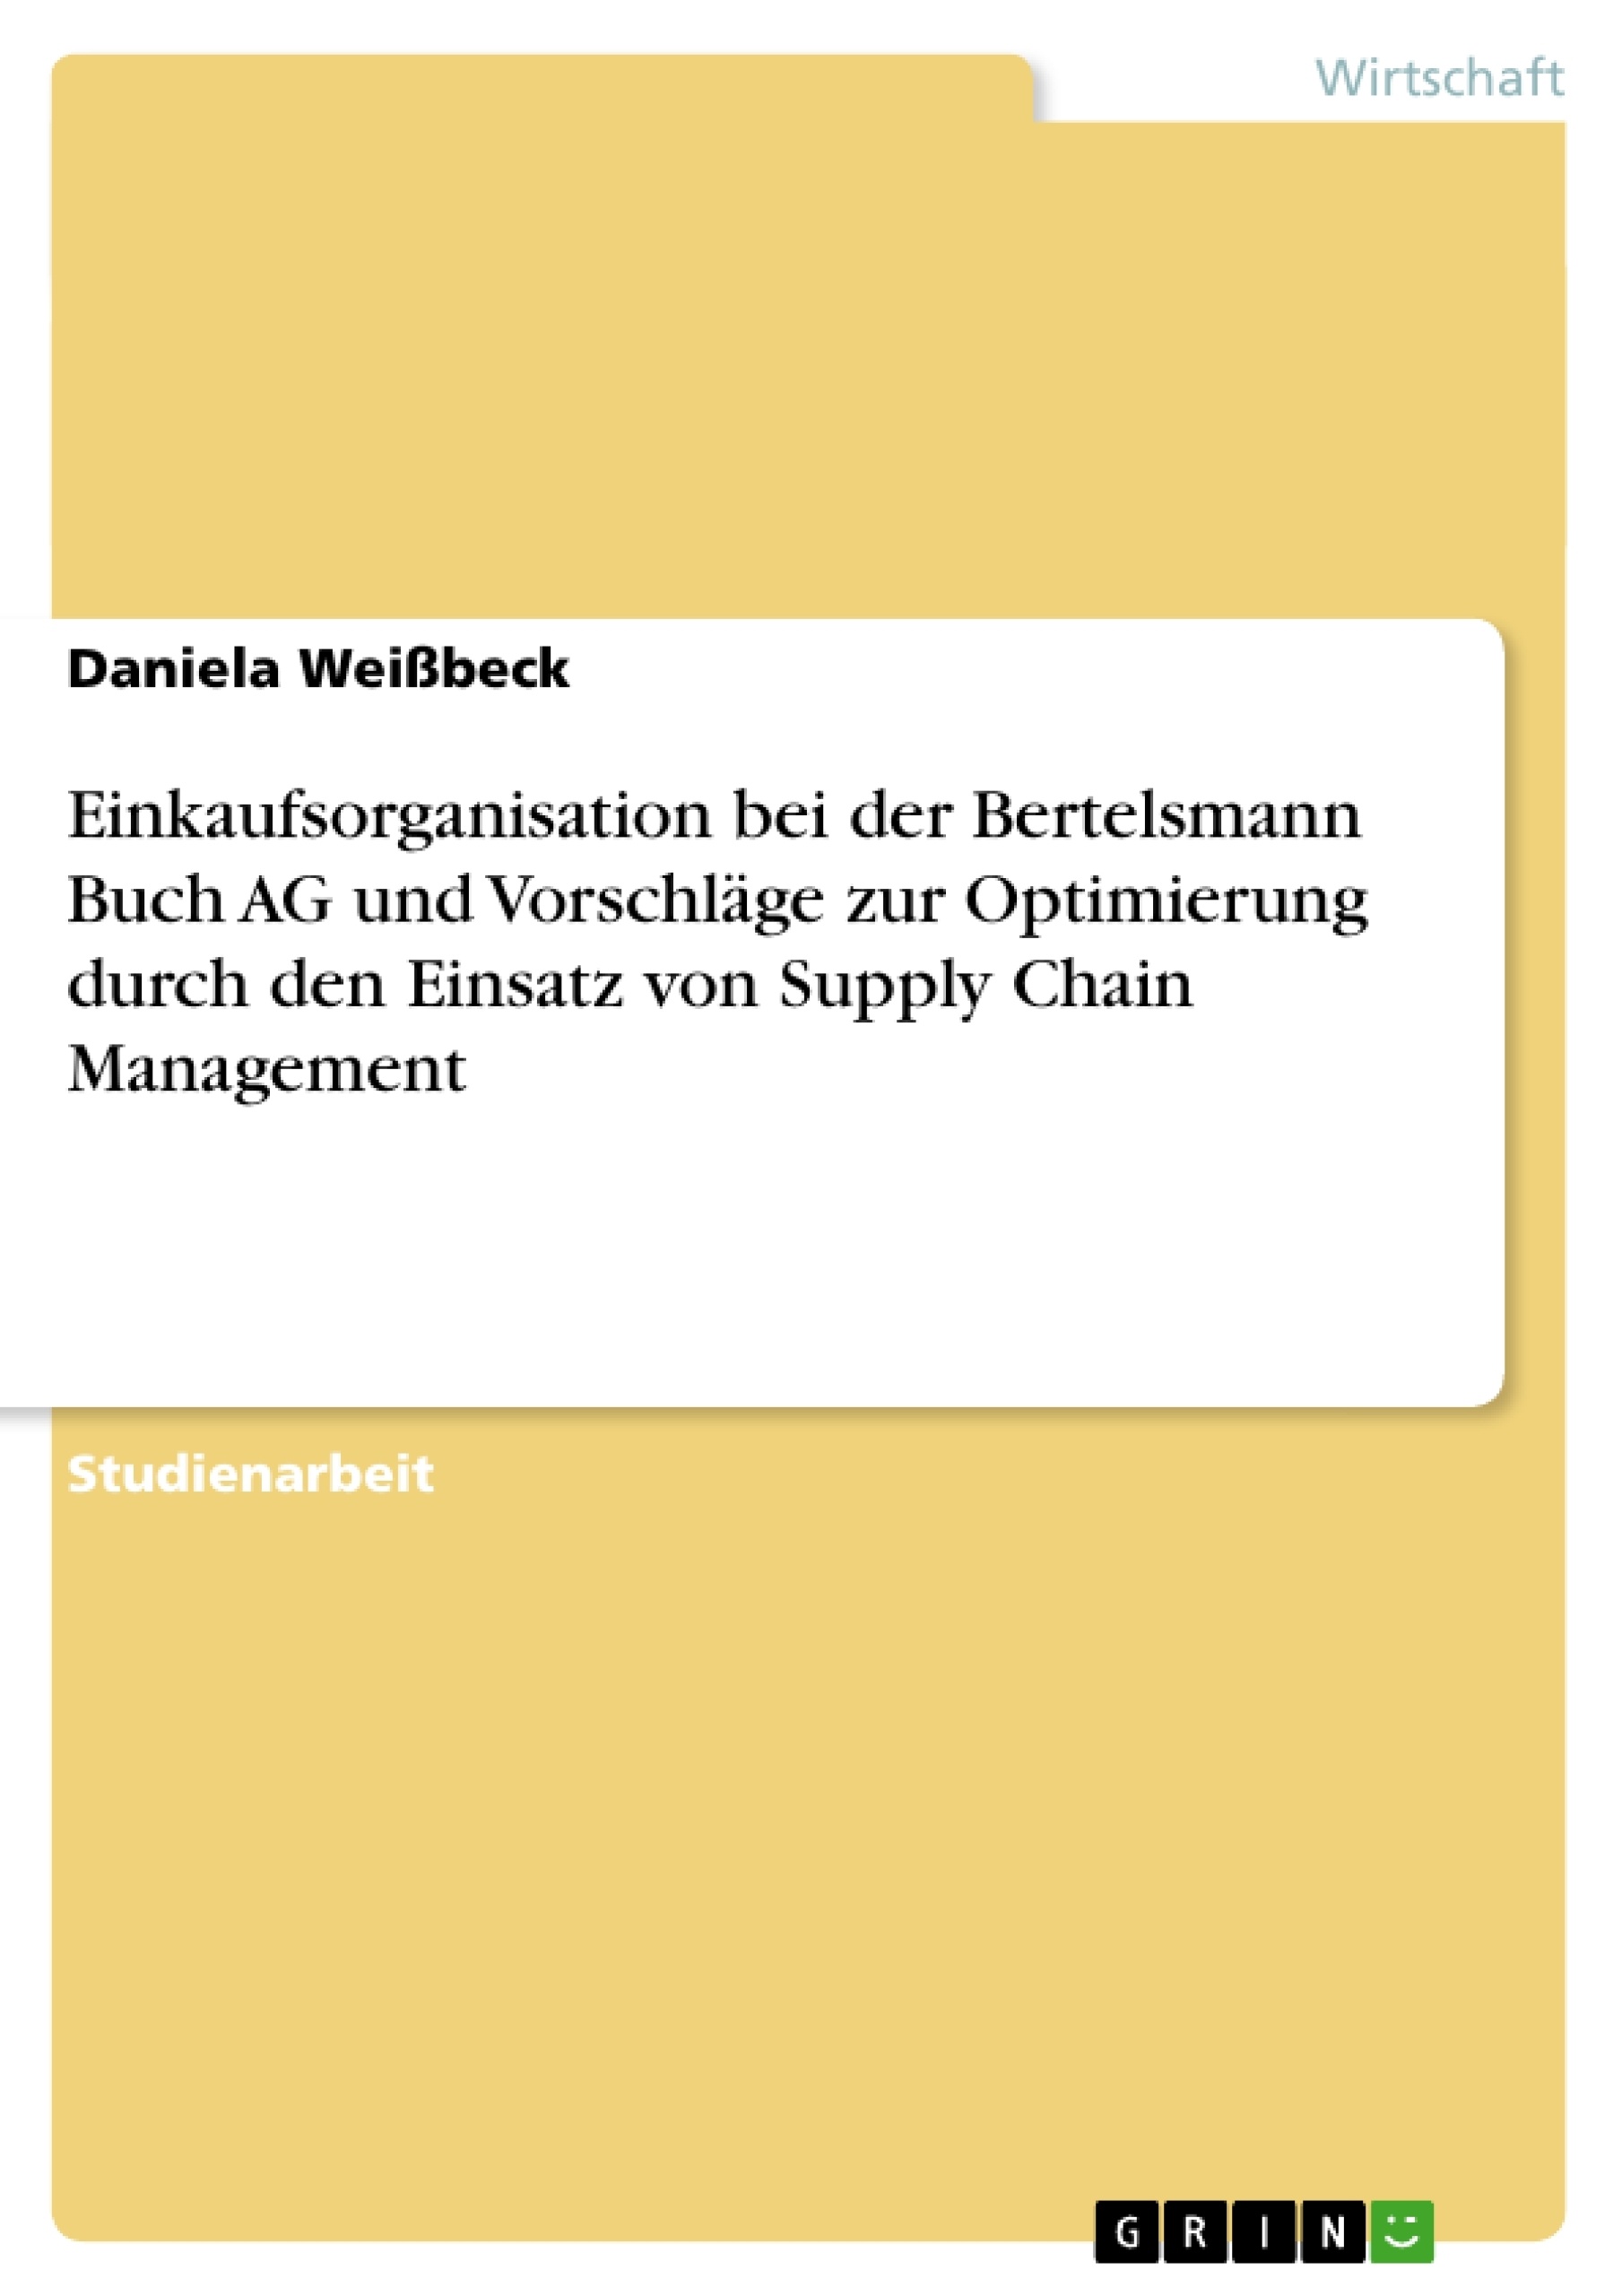 Title: Einkaufsorganisation bei der Bertelsmann Buch AG und Vorschläge zur Optimierung durch den Einsatz von Supply Chain Management